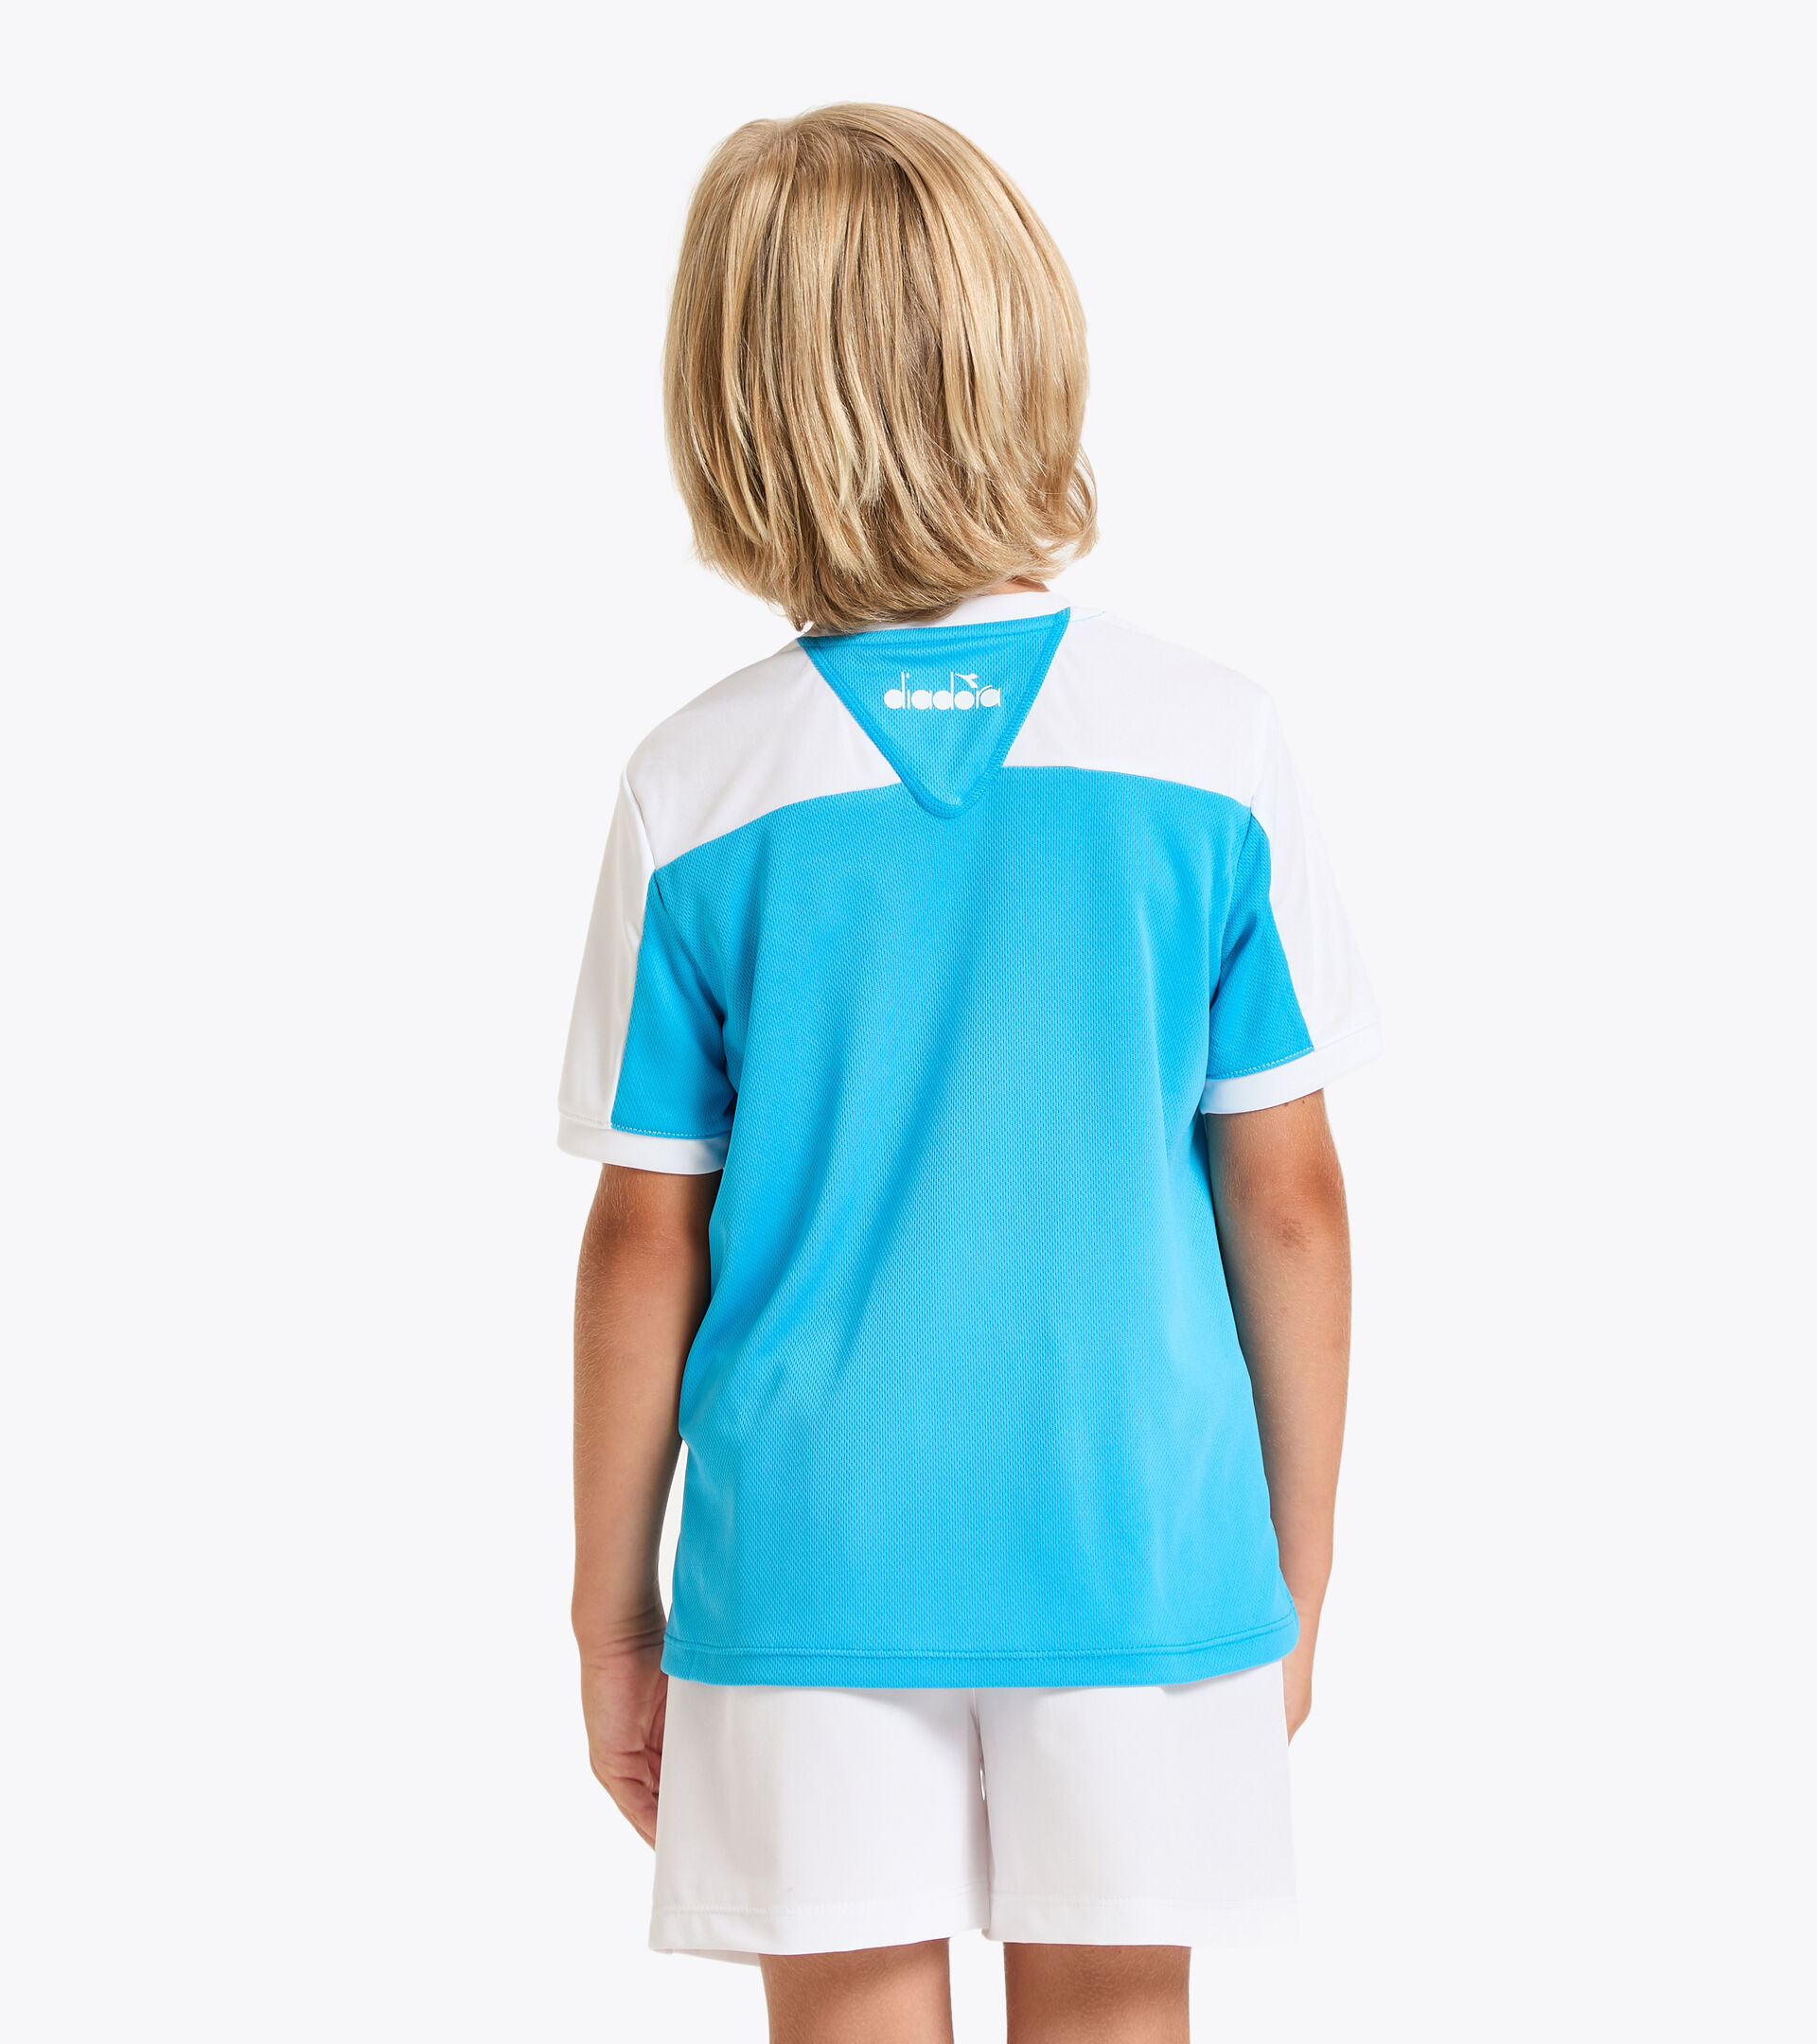 Camiseta de tenis - Junior J. T-SHIRT COURT AZUL REAL FLUO - Diadora